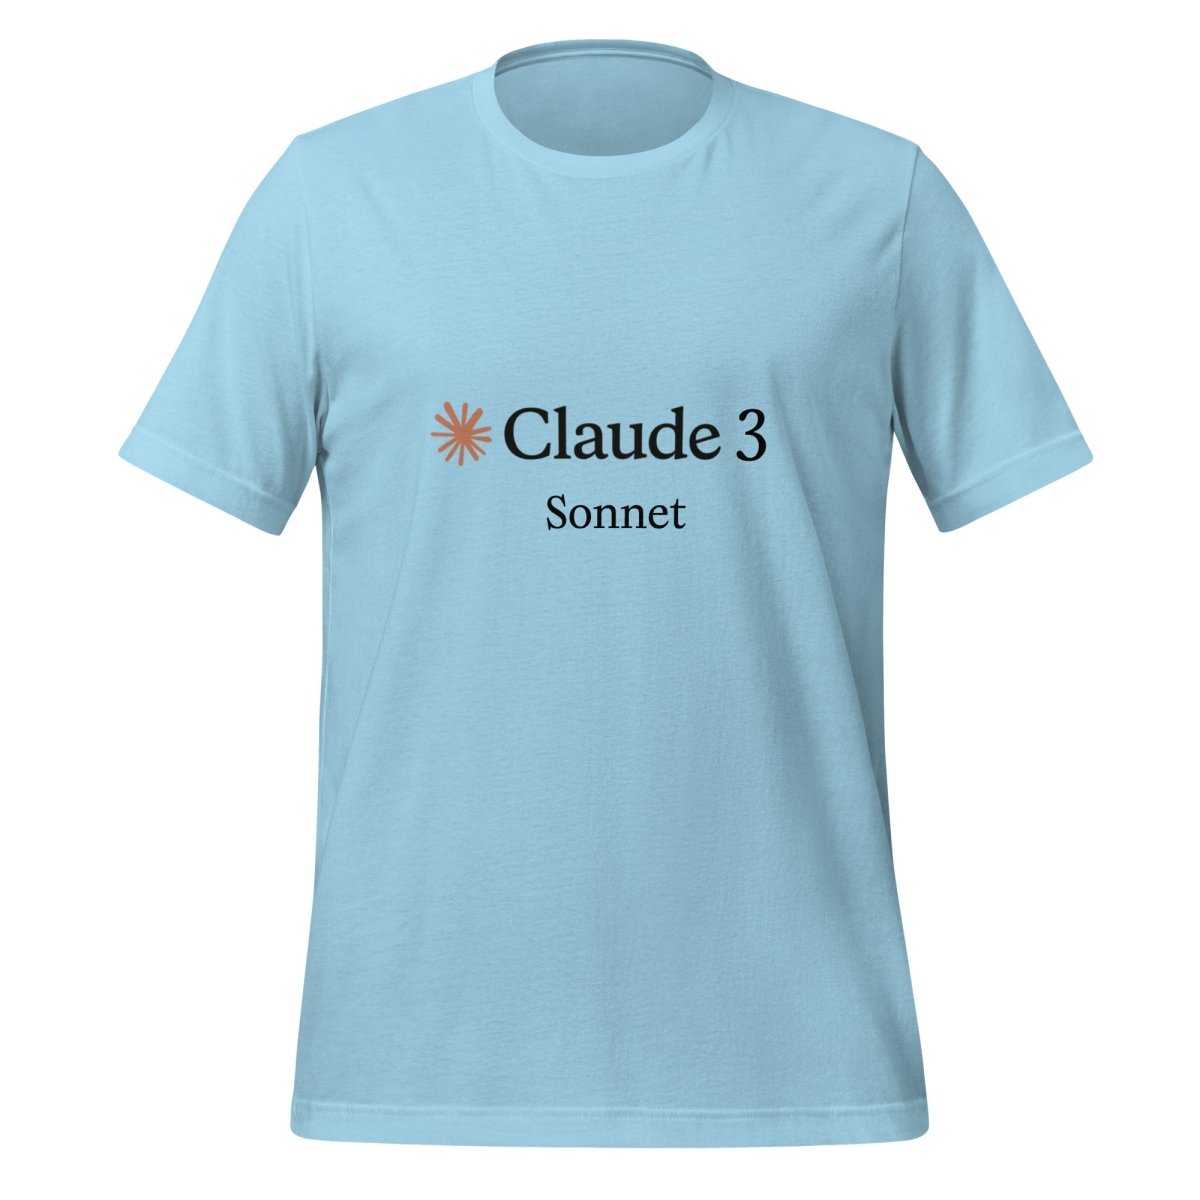 Claude 3 Sonnet T - Shirt (unisex) - Ocean Blue - AI Store